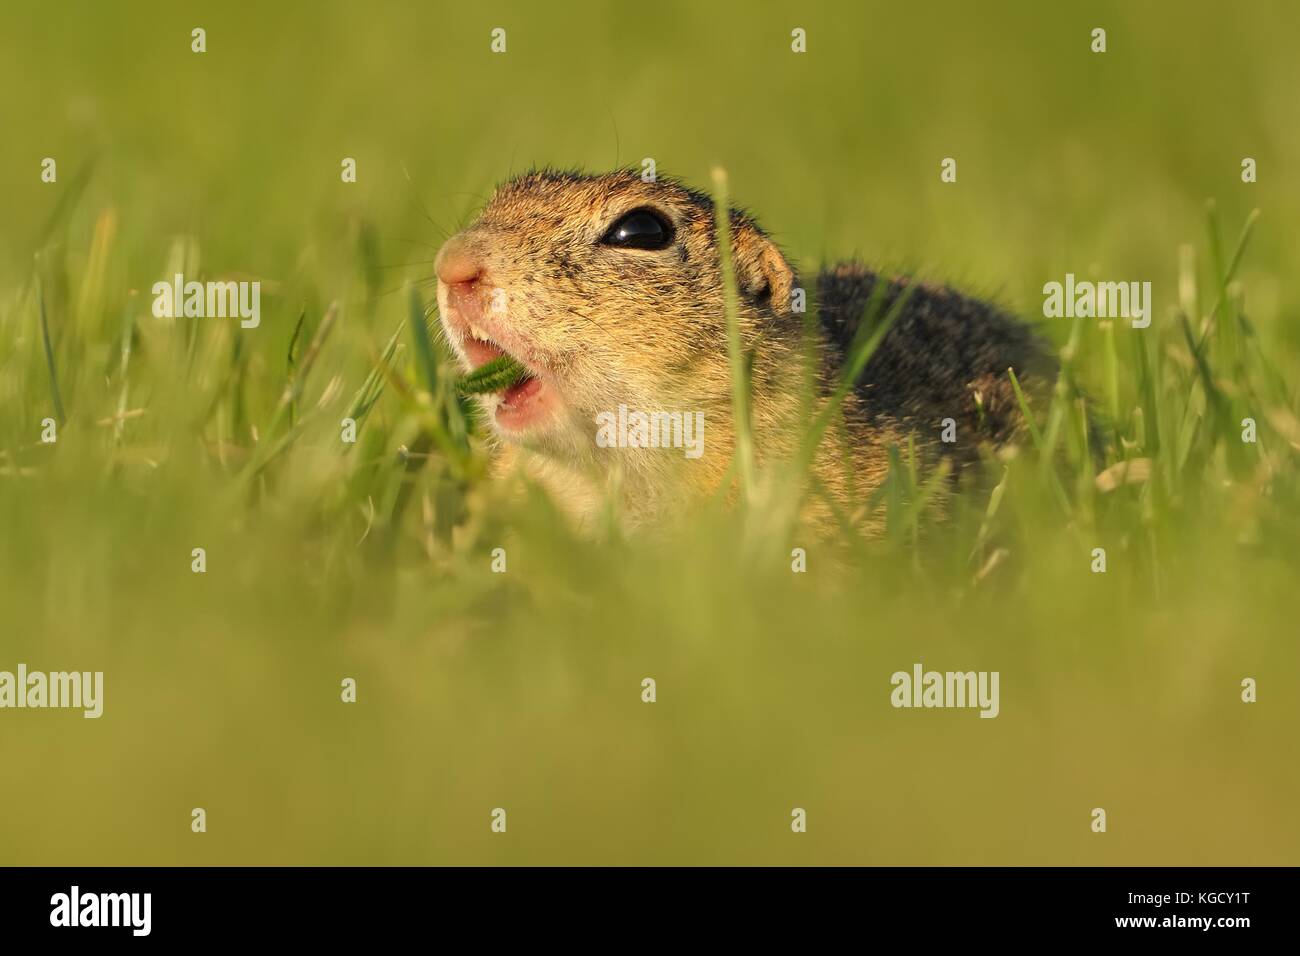 European ground squirrel - Spermophilus citellus in the grass, green background Stock Photo